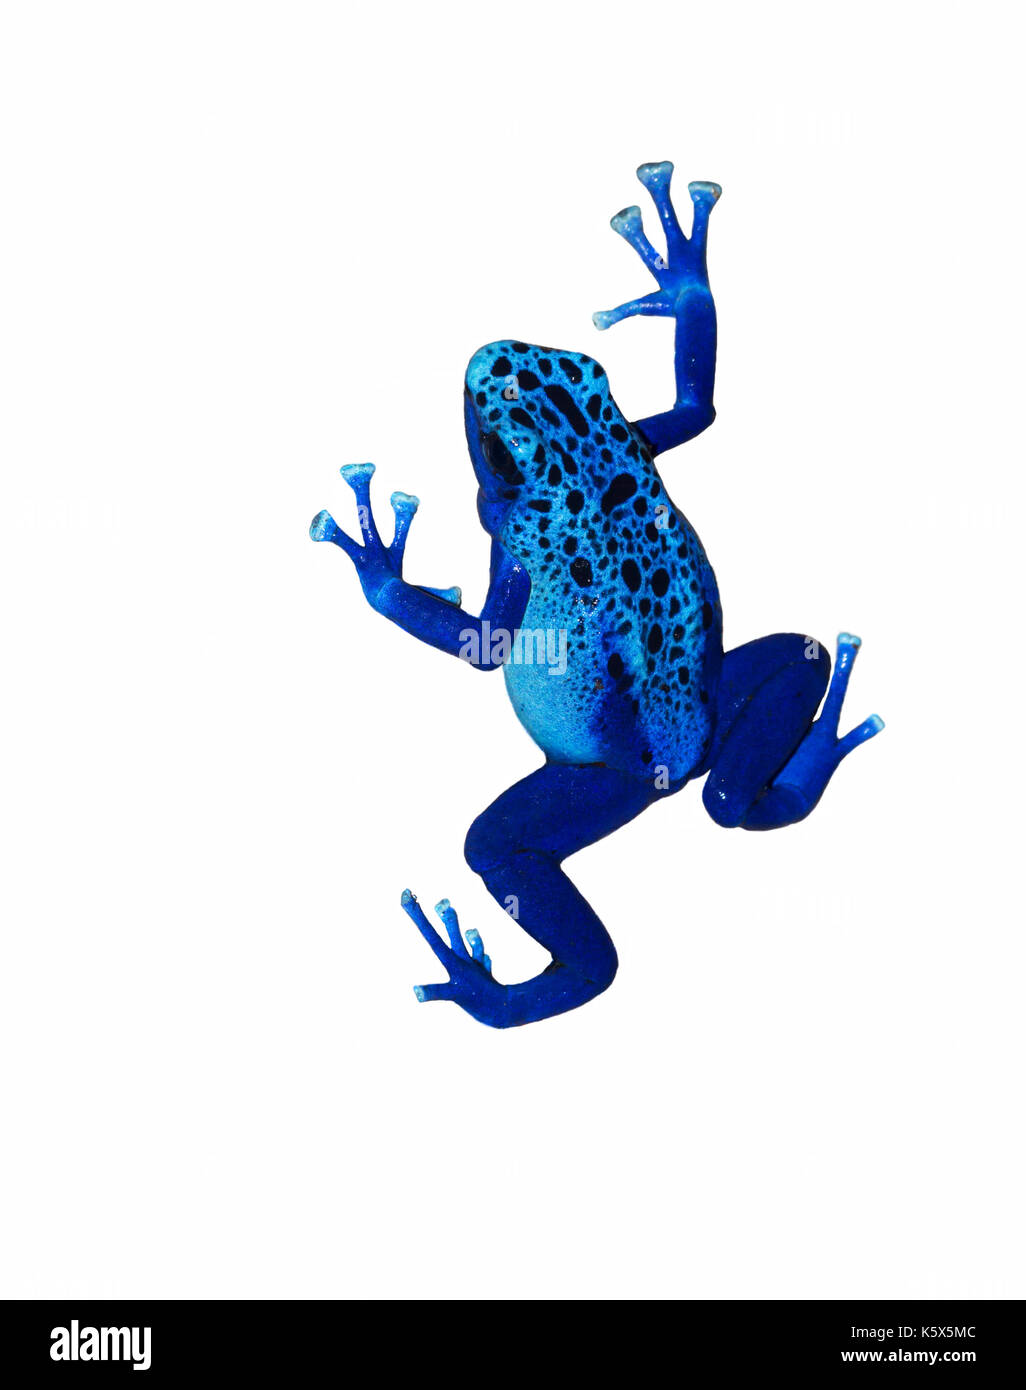 Dyeing poison dart frog (Dendrobates tinctorius) isolated on white background Stock Photo